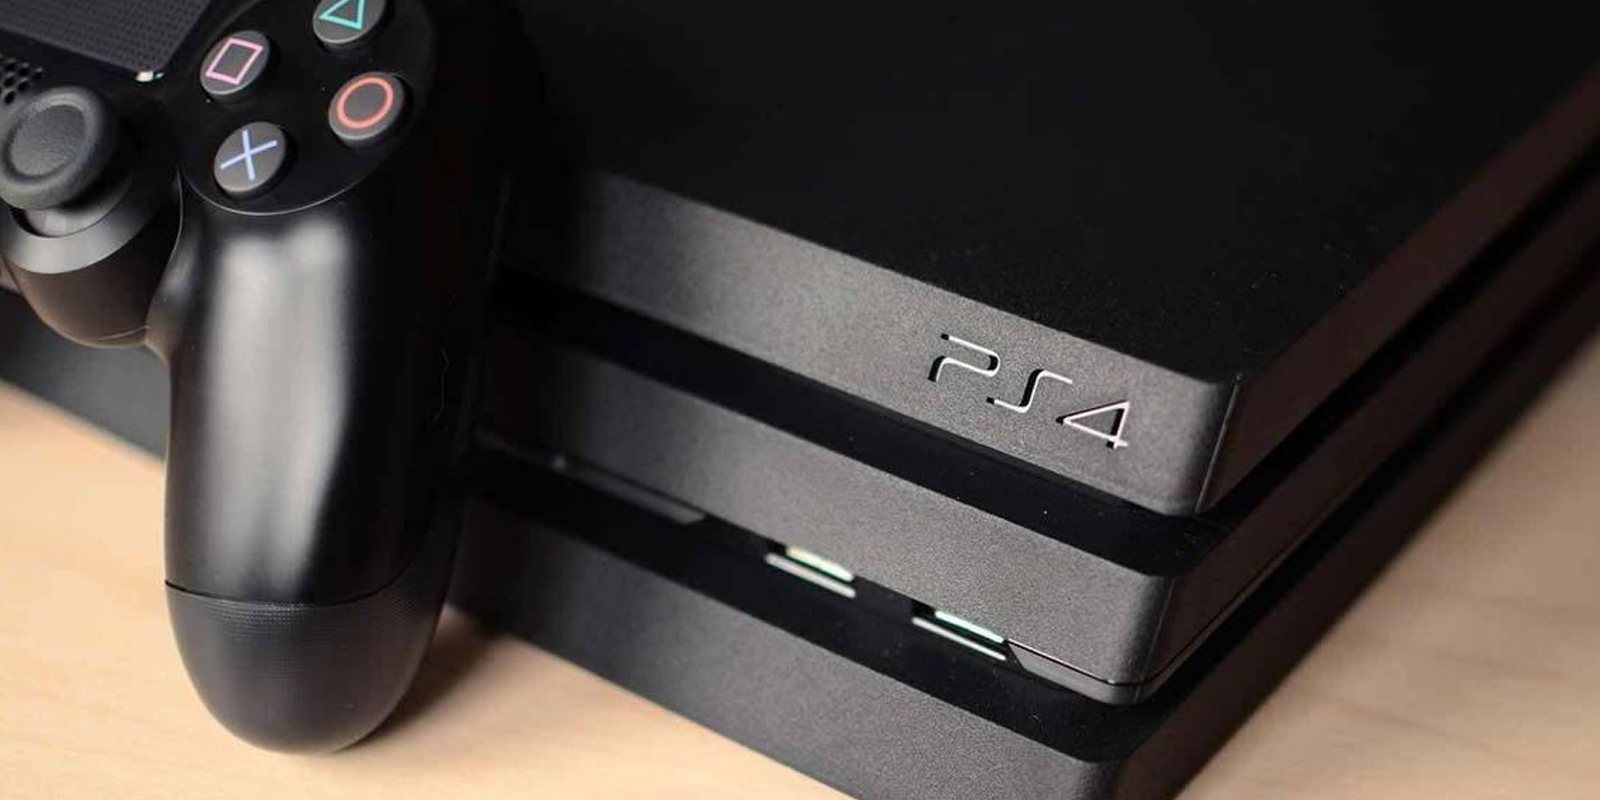 Un analista señala que Sony lanzará su PS5 a finales de 2019